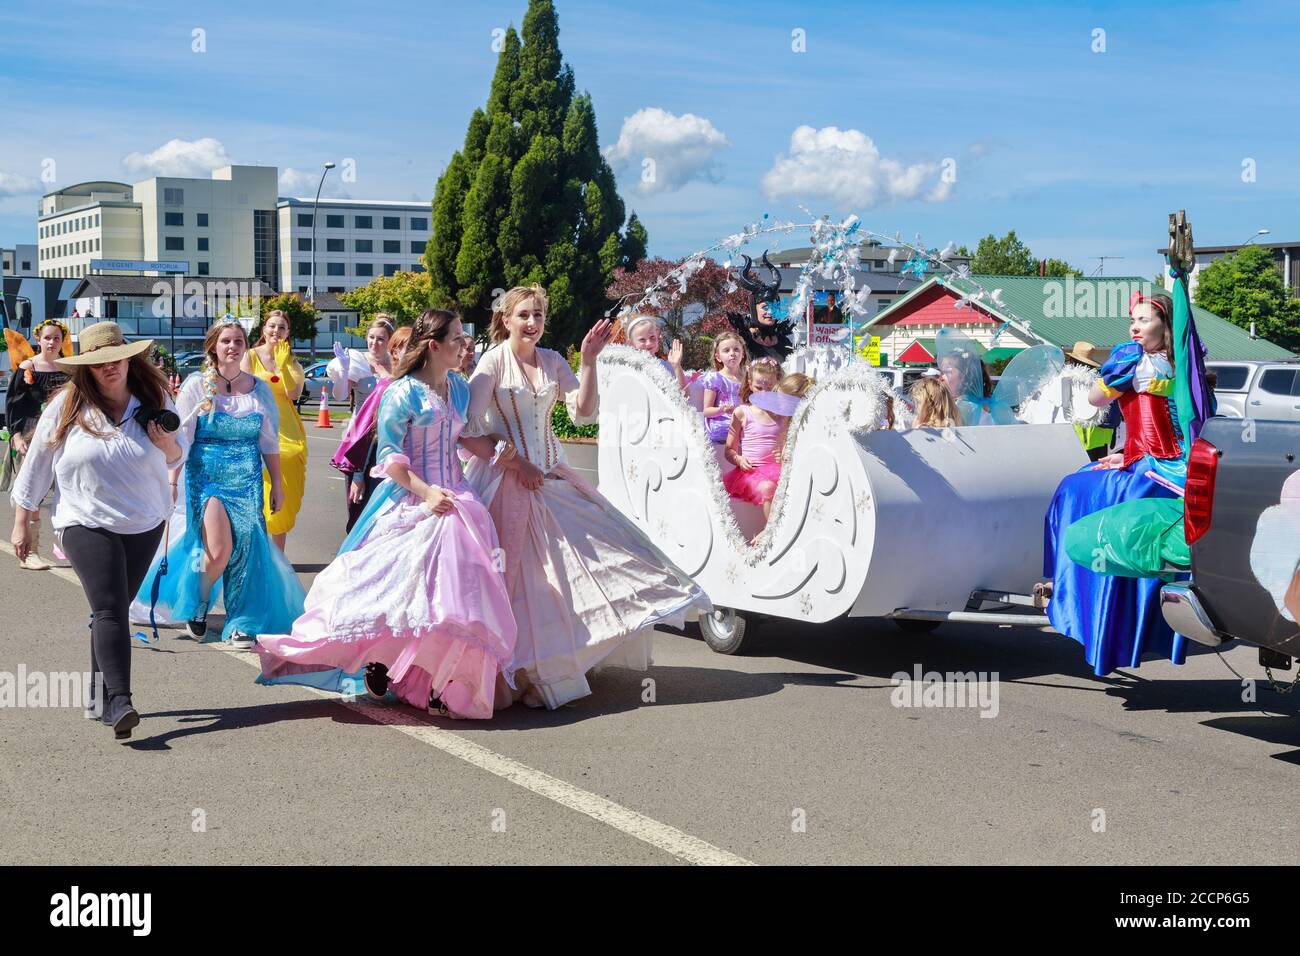 Junge Frauen und Mädchen, die als Prinzessinnen gekleidet sind, nehmen an einer Weihnachtsparade in Rotorua, Neuseeland Teil. Dezember 208 Stockfoto